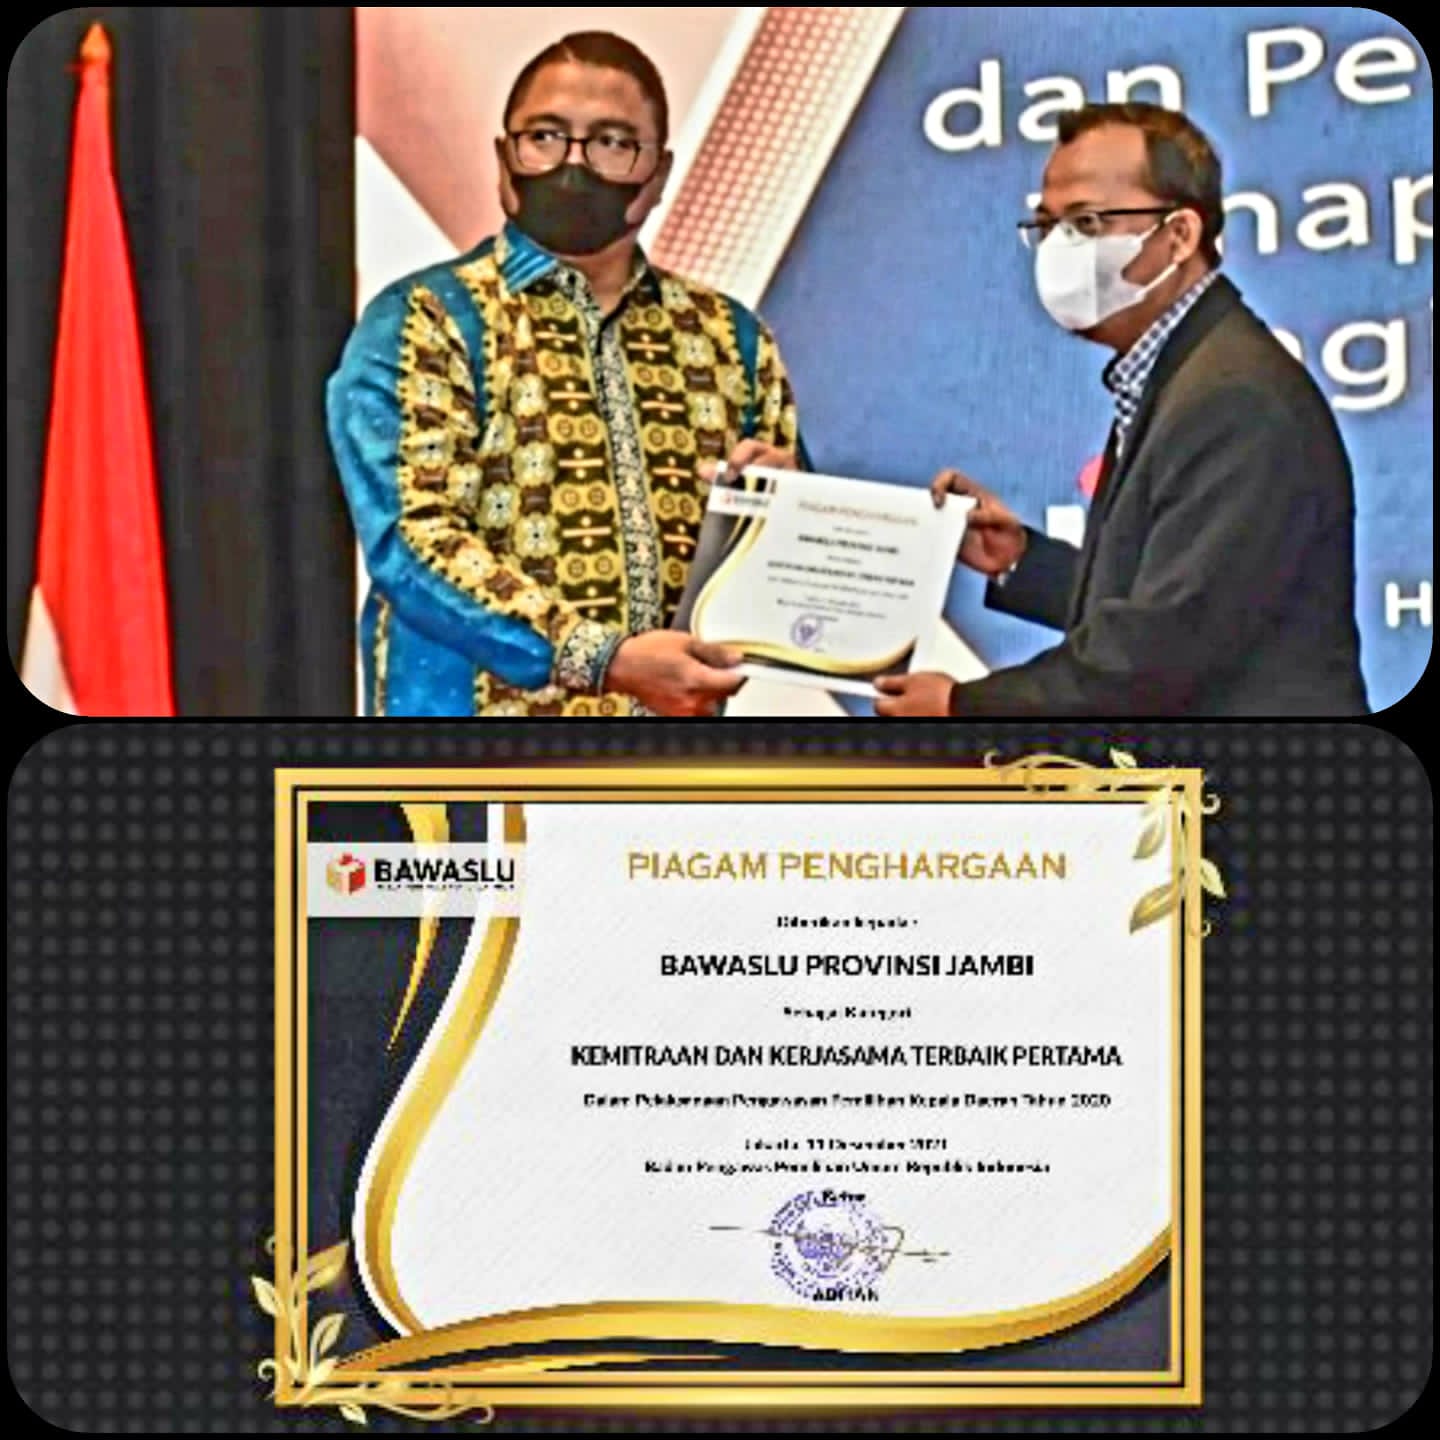 Bawaslu Provinsi Jambi Raih Penghargaan Kategori Kemitraan dan Kerjasama Terbaik